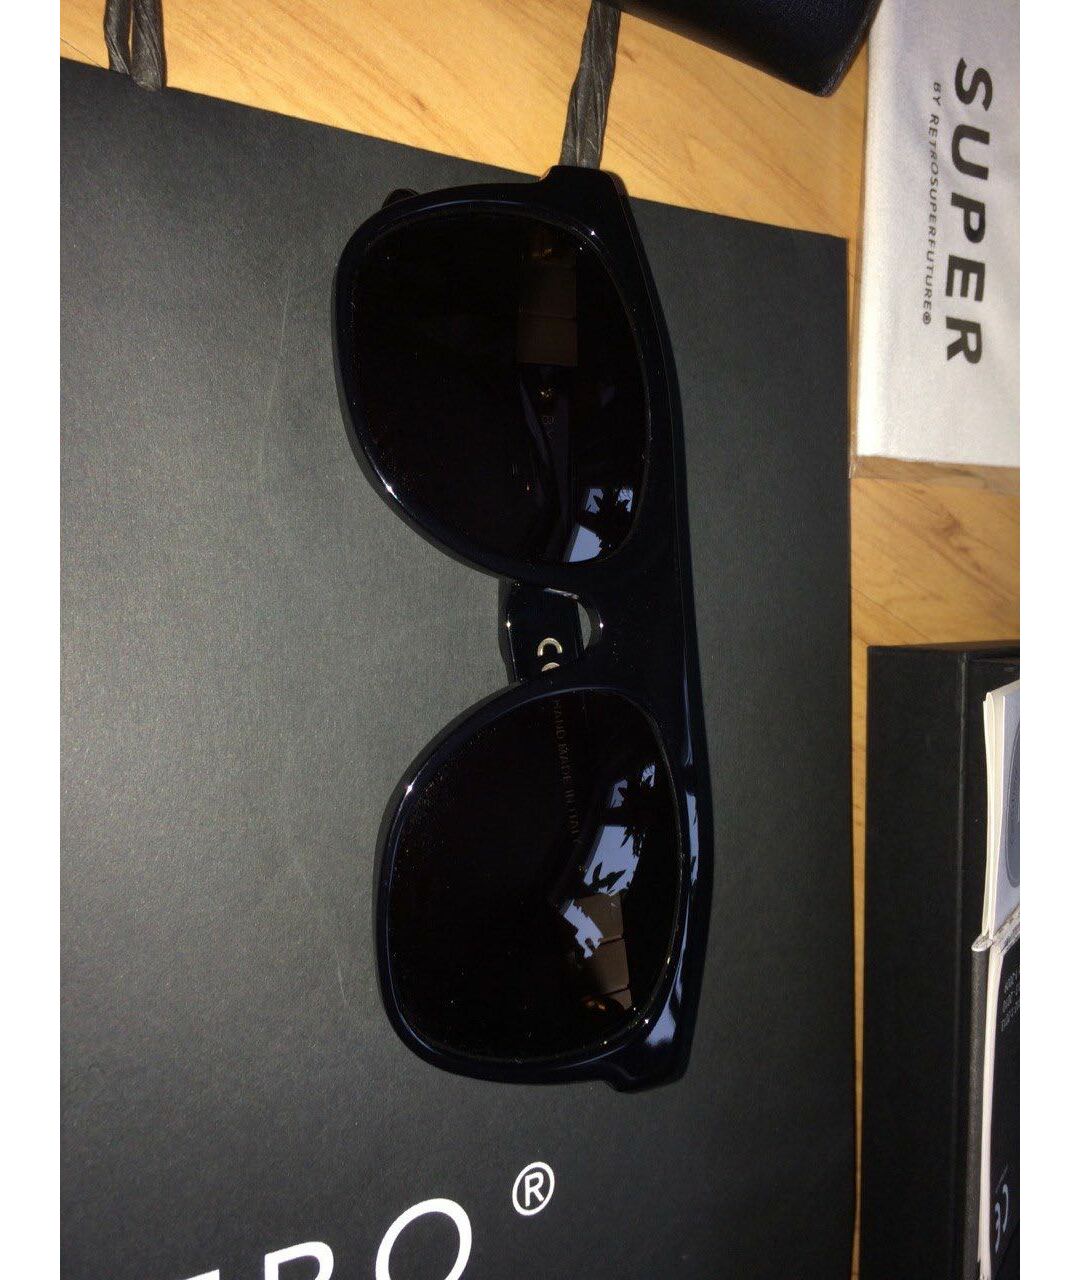 RETROSUPERFUTURE Черные пластиковые солнцезащитные очки, фото 4